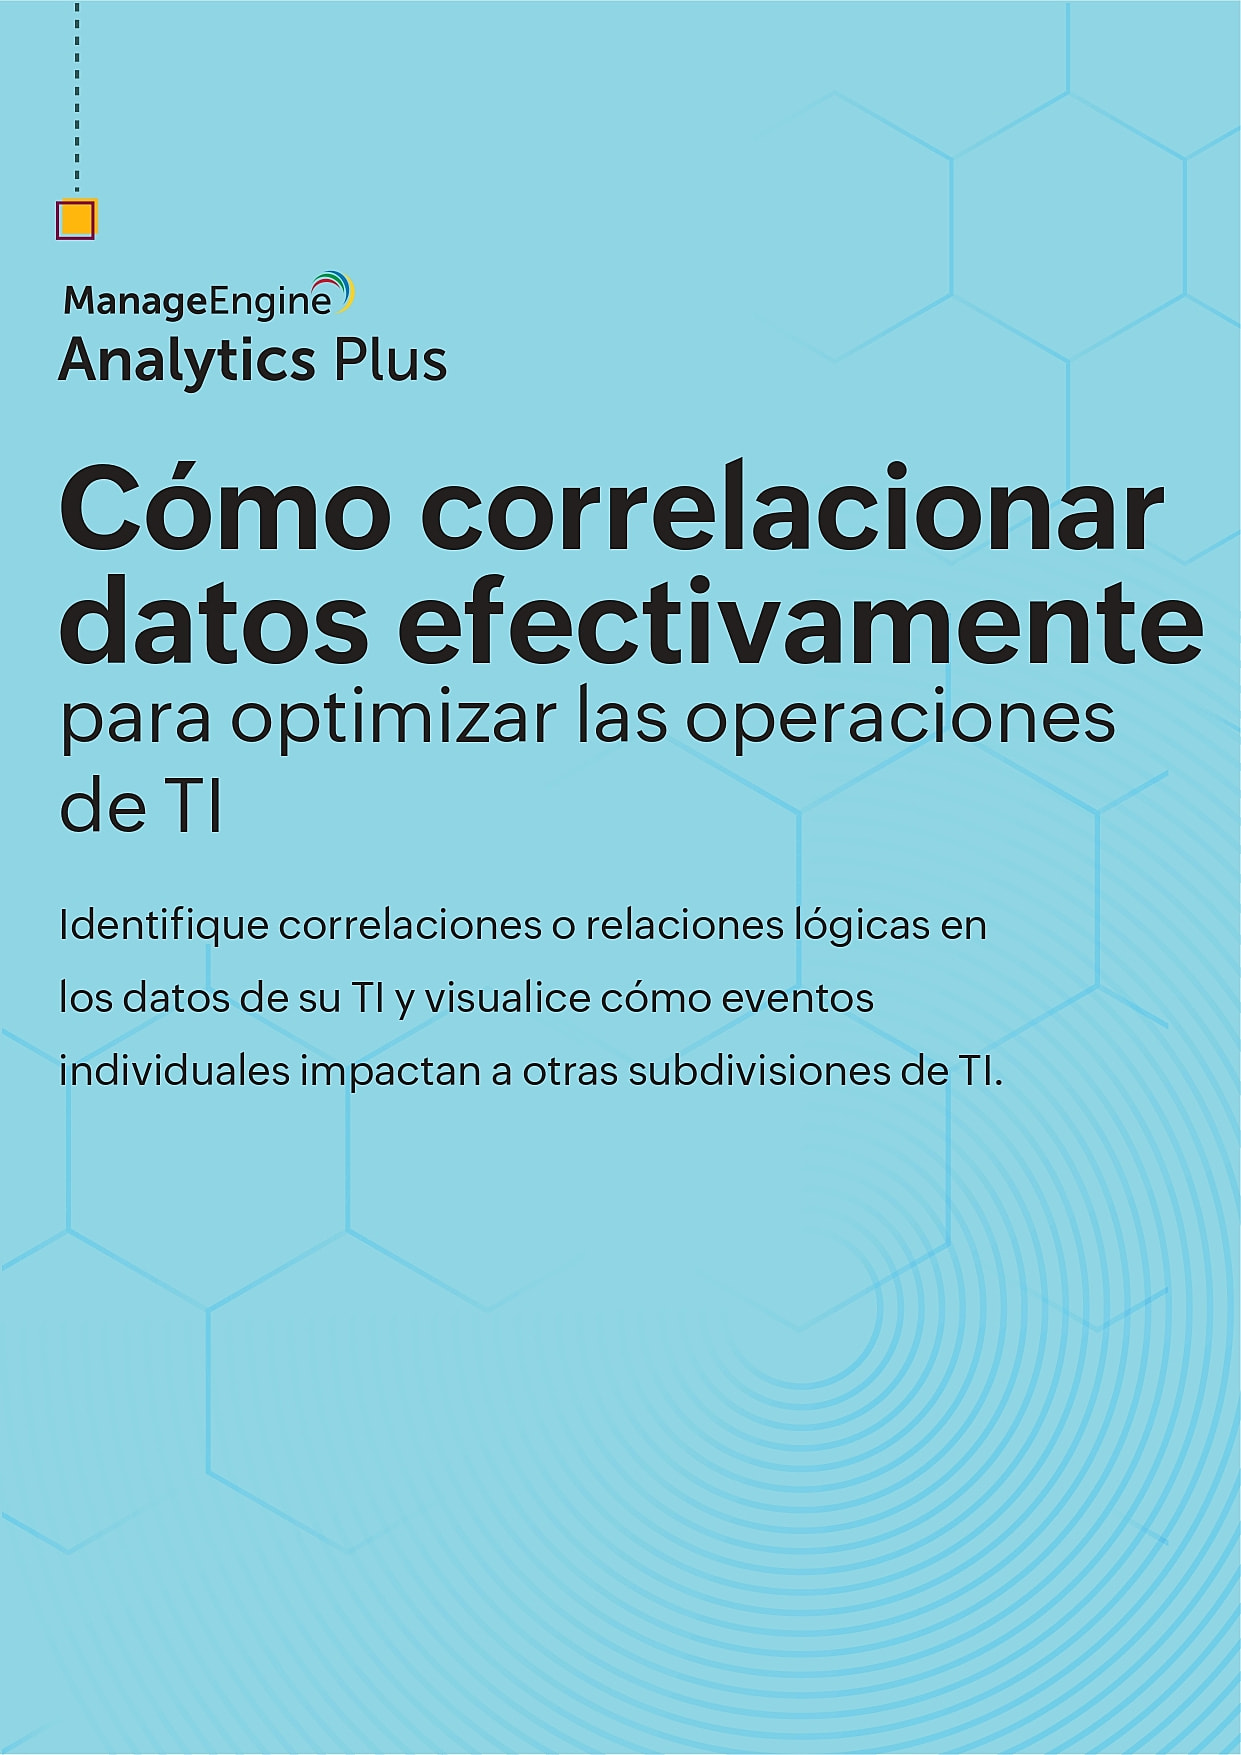 Ebook: Resuelva problemas de TI utilizando correlación de datos de Analytics Plus de ManageEngine